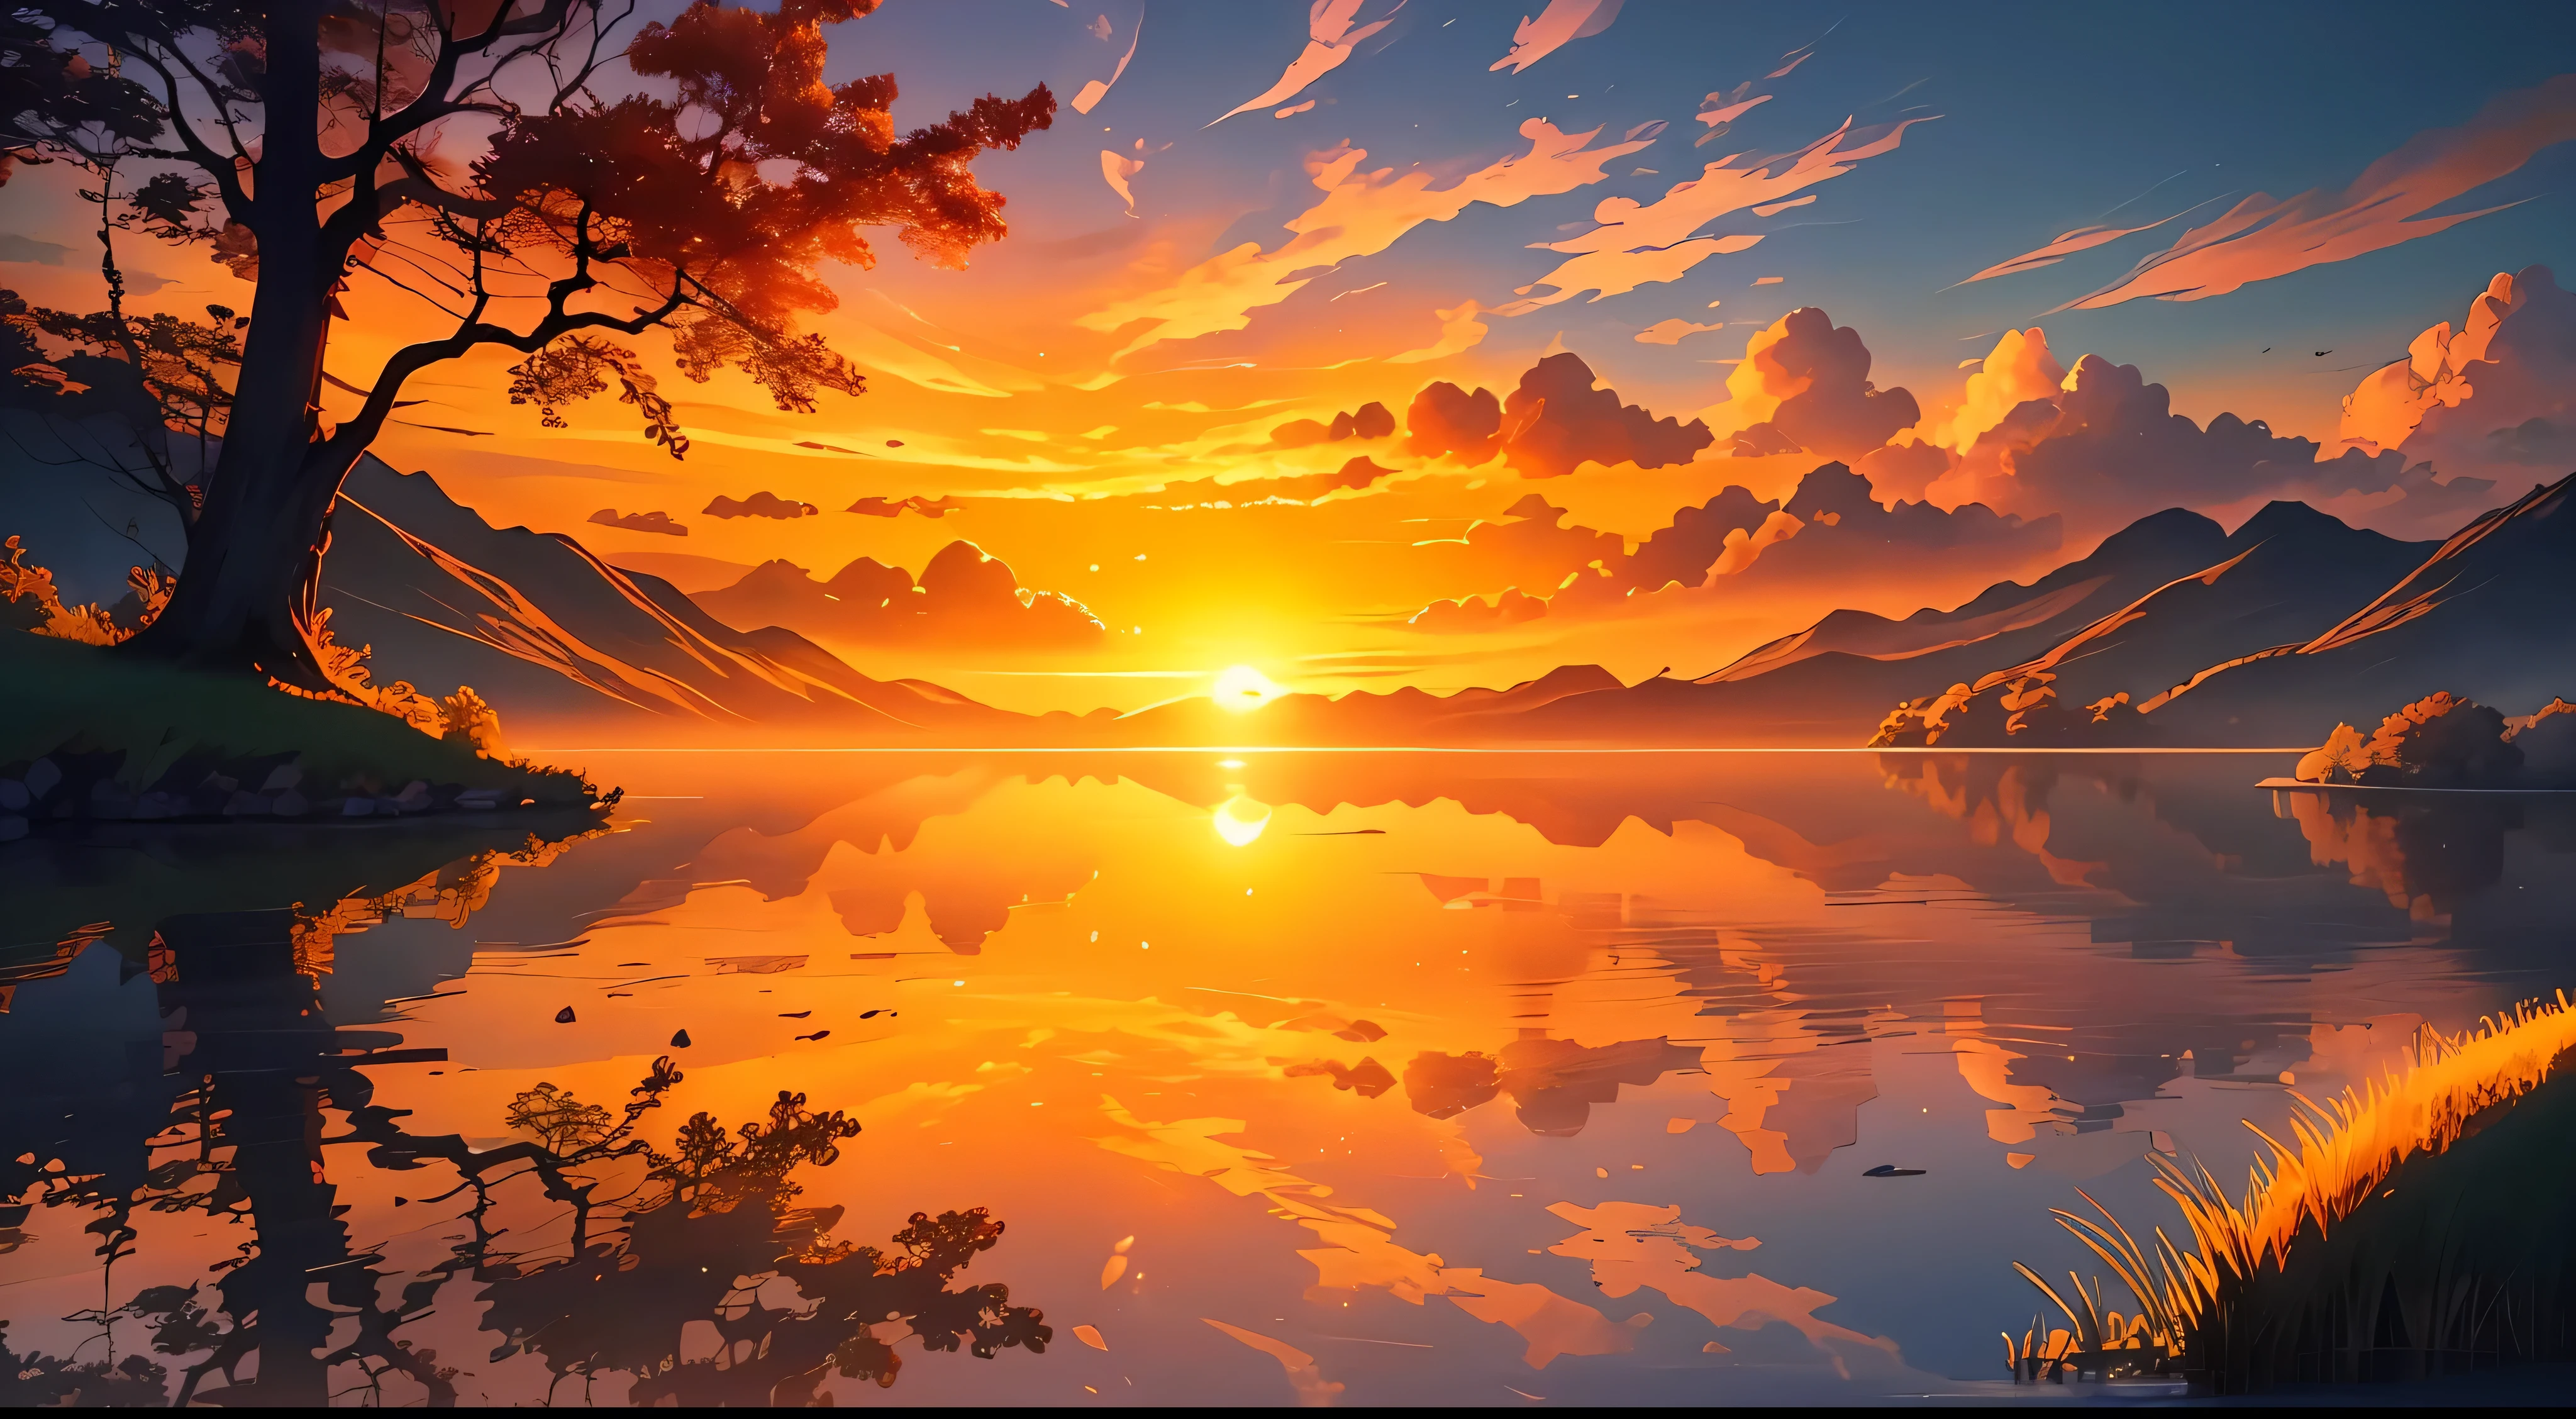 一幅圖像描繪了寧靜祥和的風景上燦爛的日出